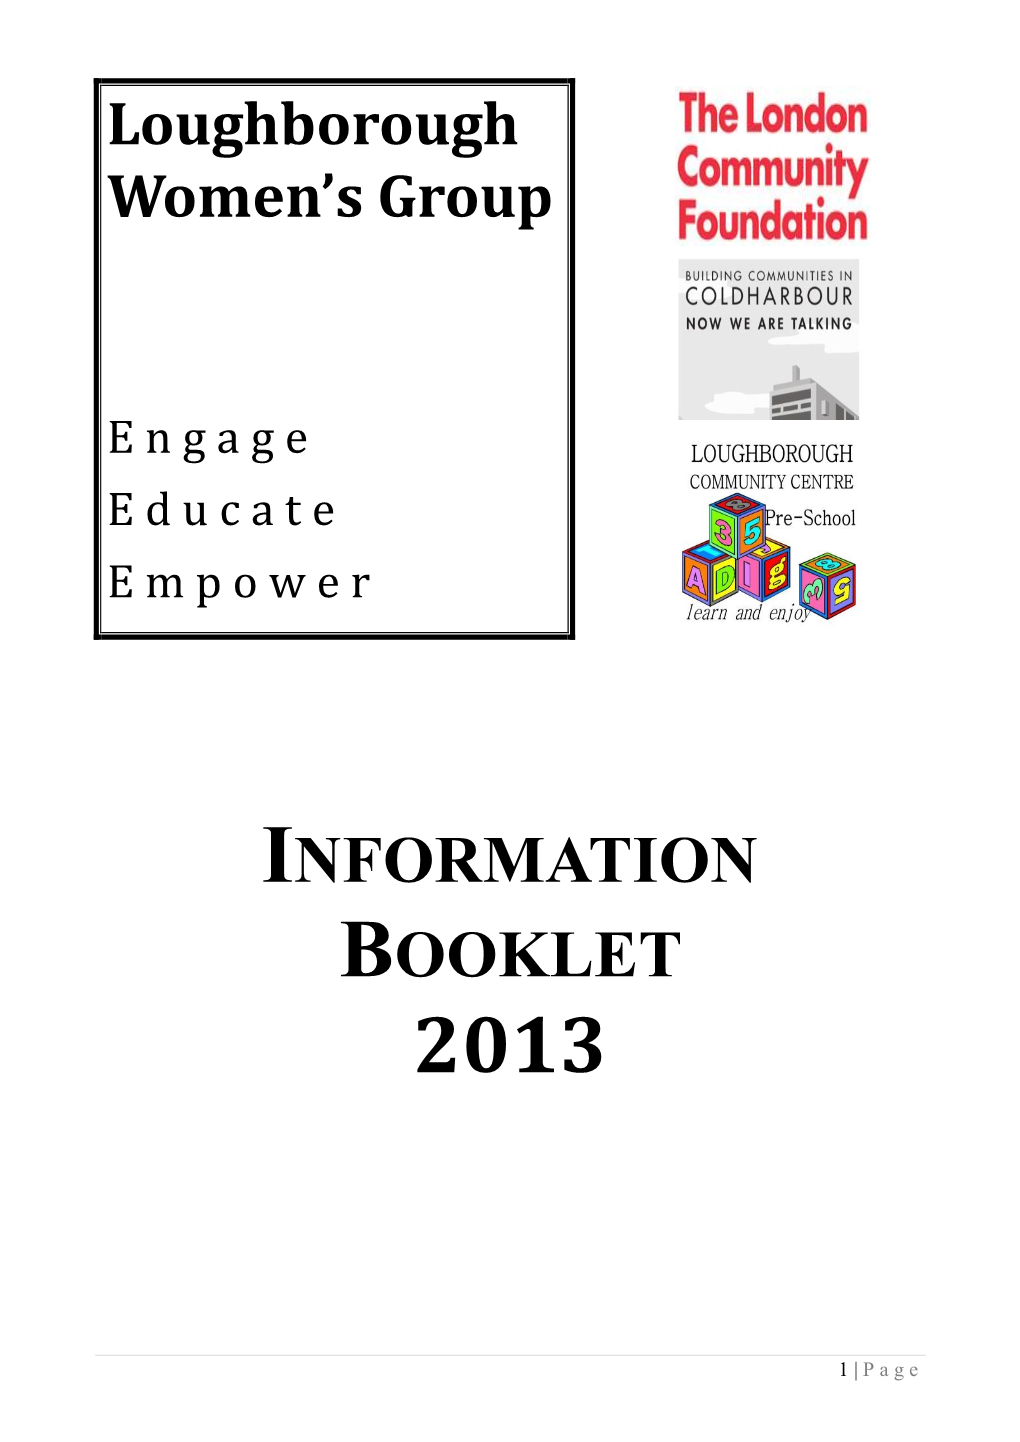 Information Booklet 2013